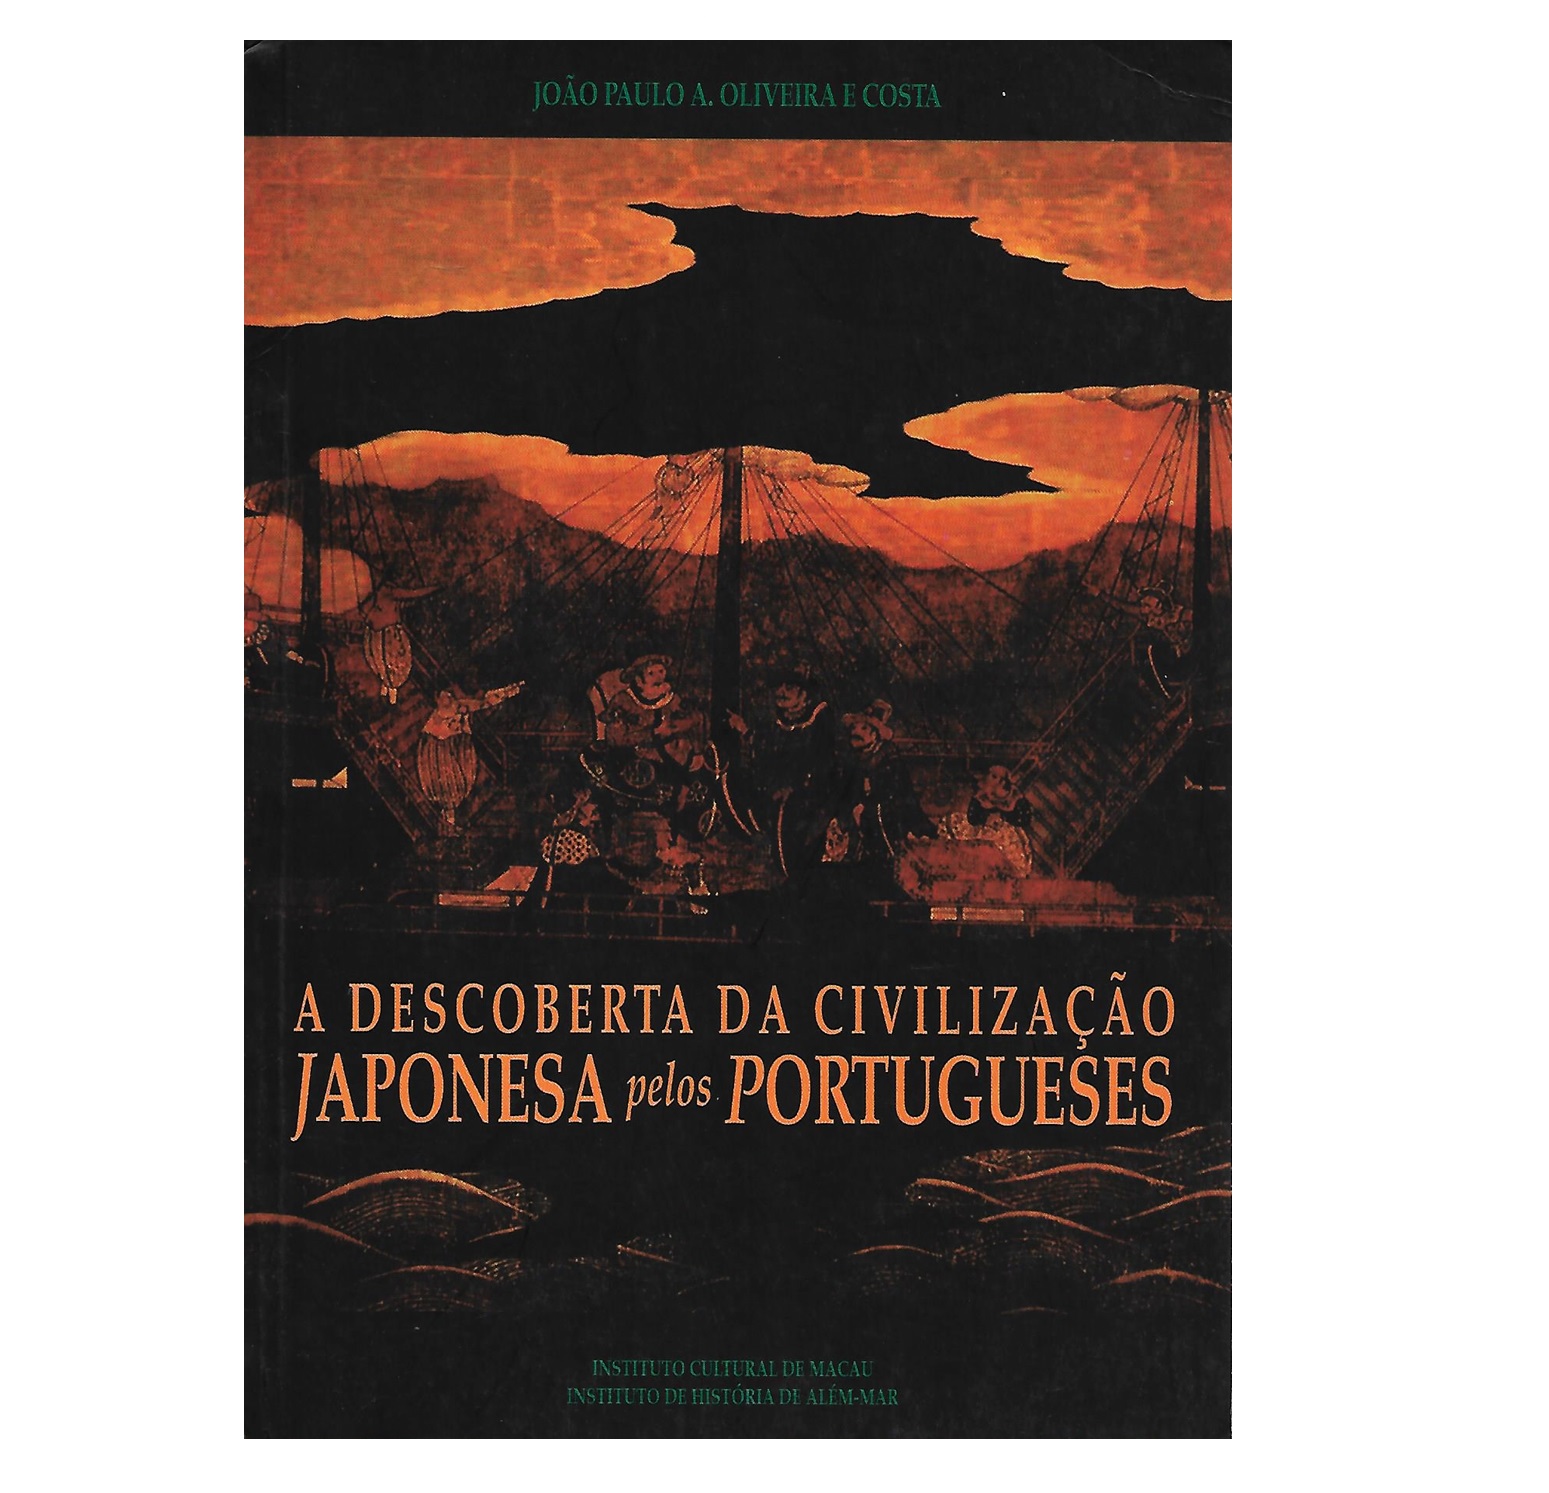 A DESCOBERTA DA CIVILIZAÇÃO JAPONESA PELOS PORTUGUESES